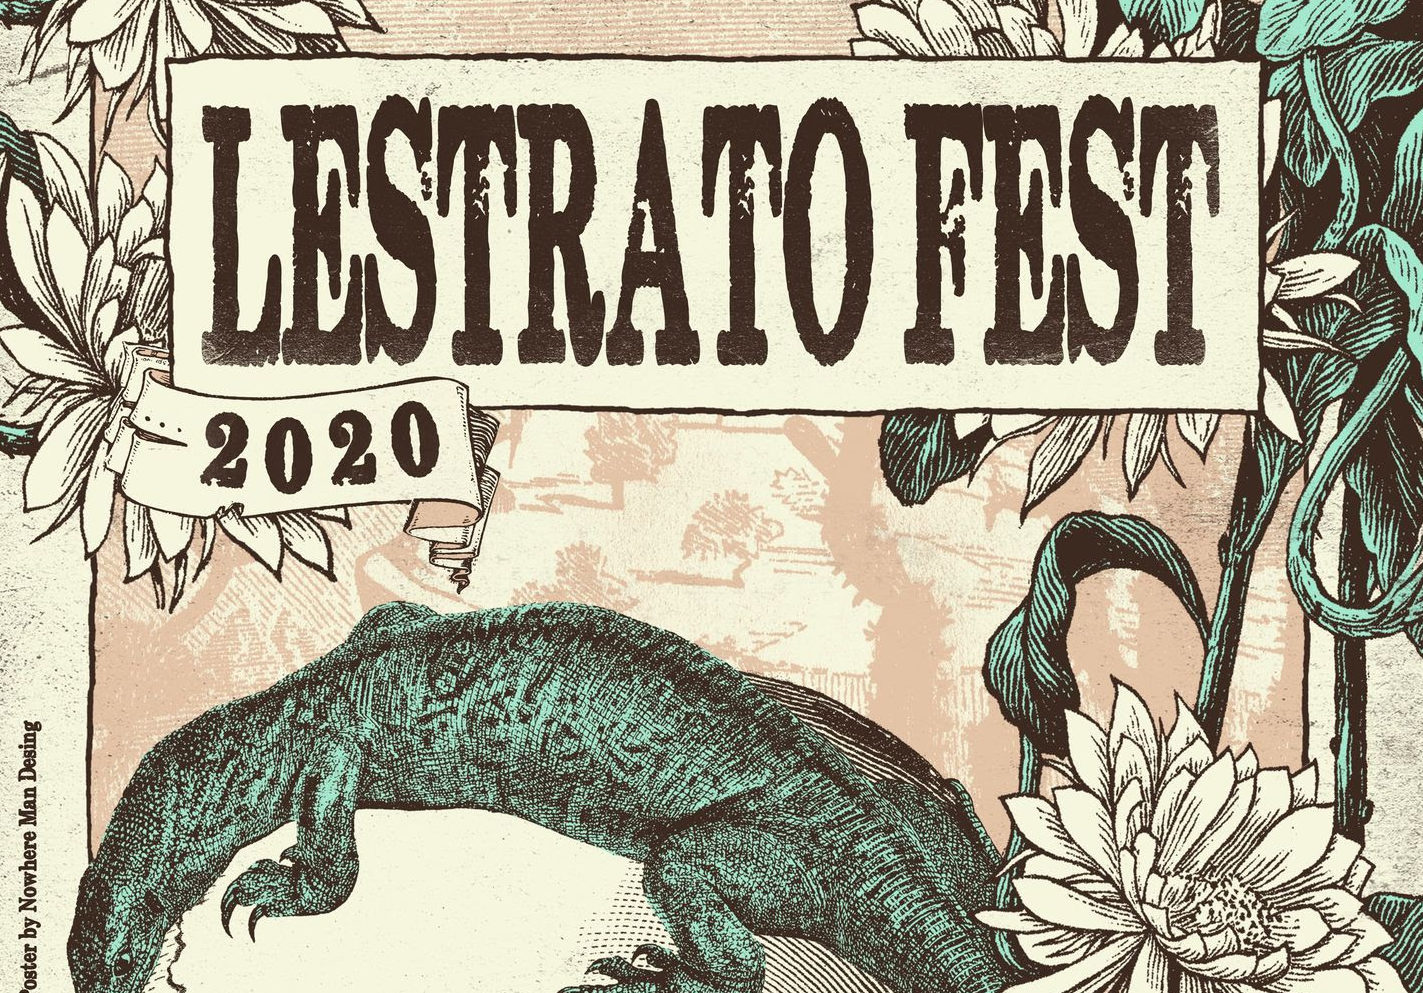 Cartel Lestrato Fest